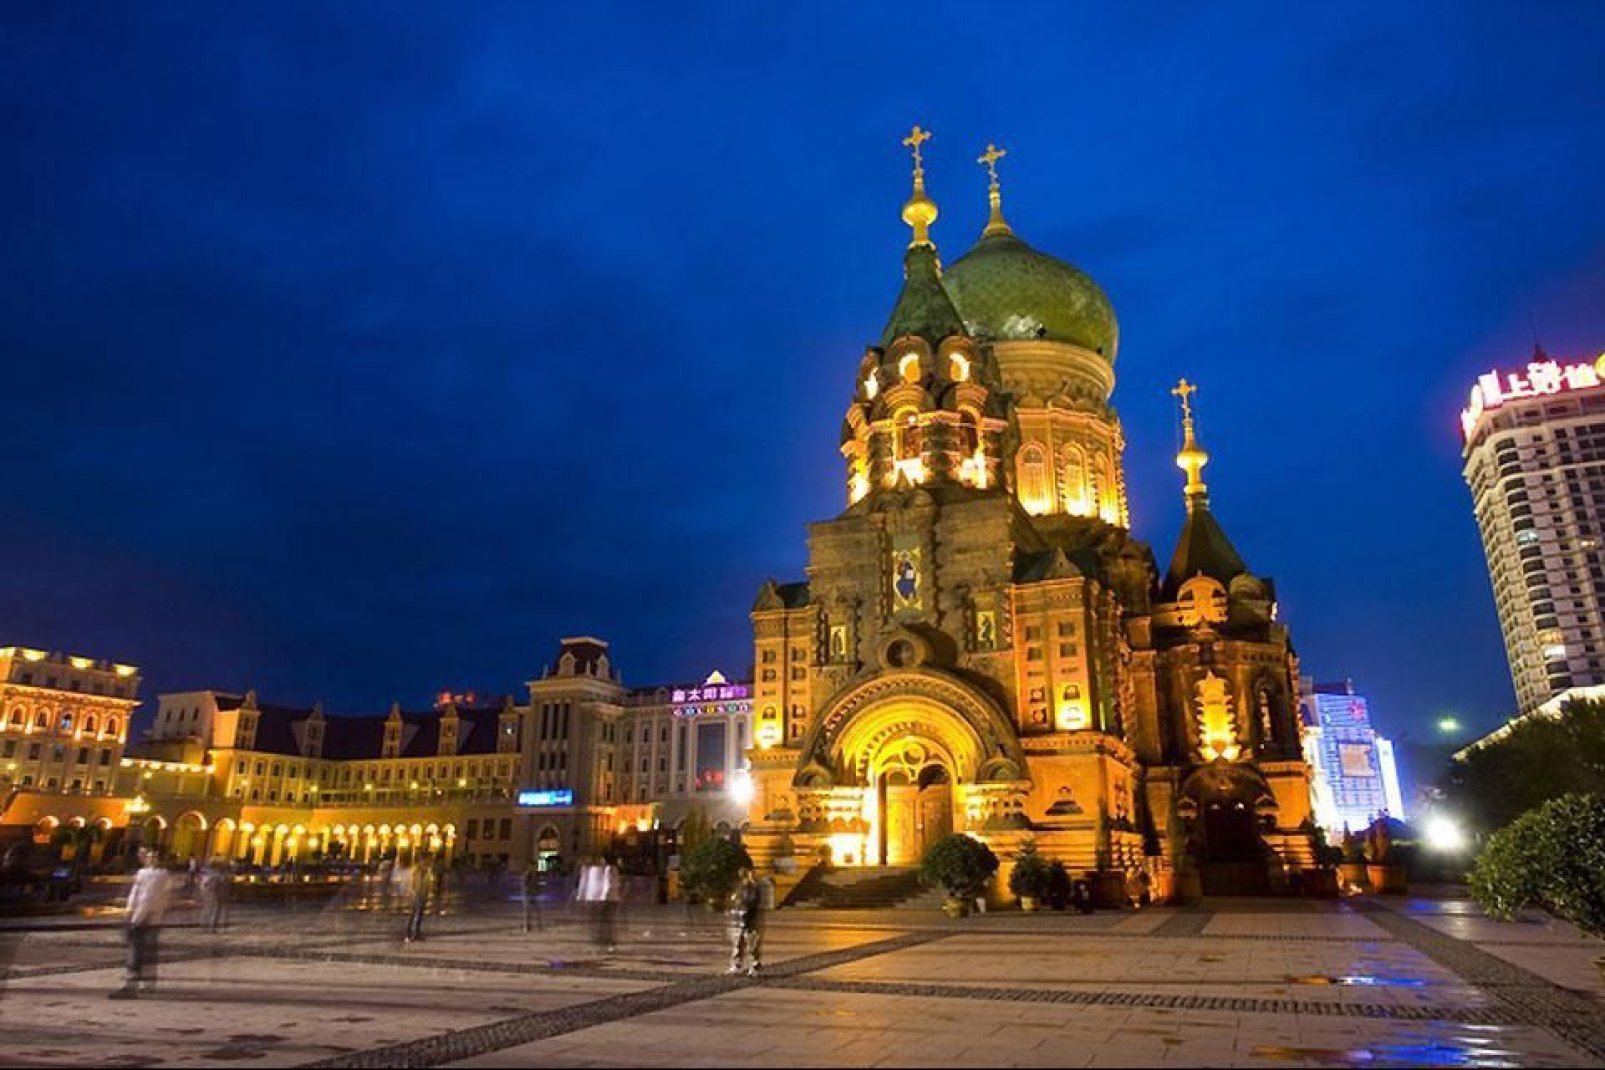 La cattedrale di Santa Sofia è un'antica chiesa russa ortodossa. Essa fu costruita nel 1907 per festeggiare il completamento della linea ferroviaria transiberiana nel 1903.